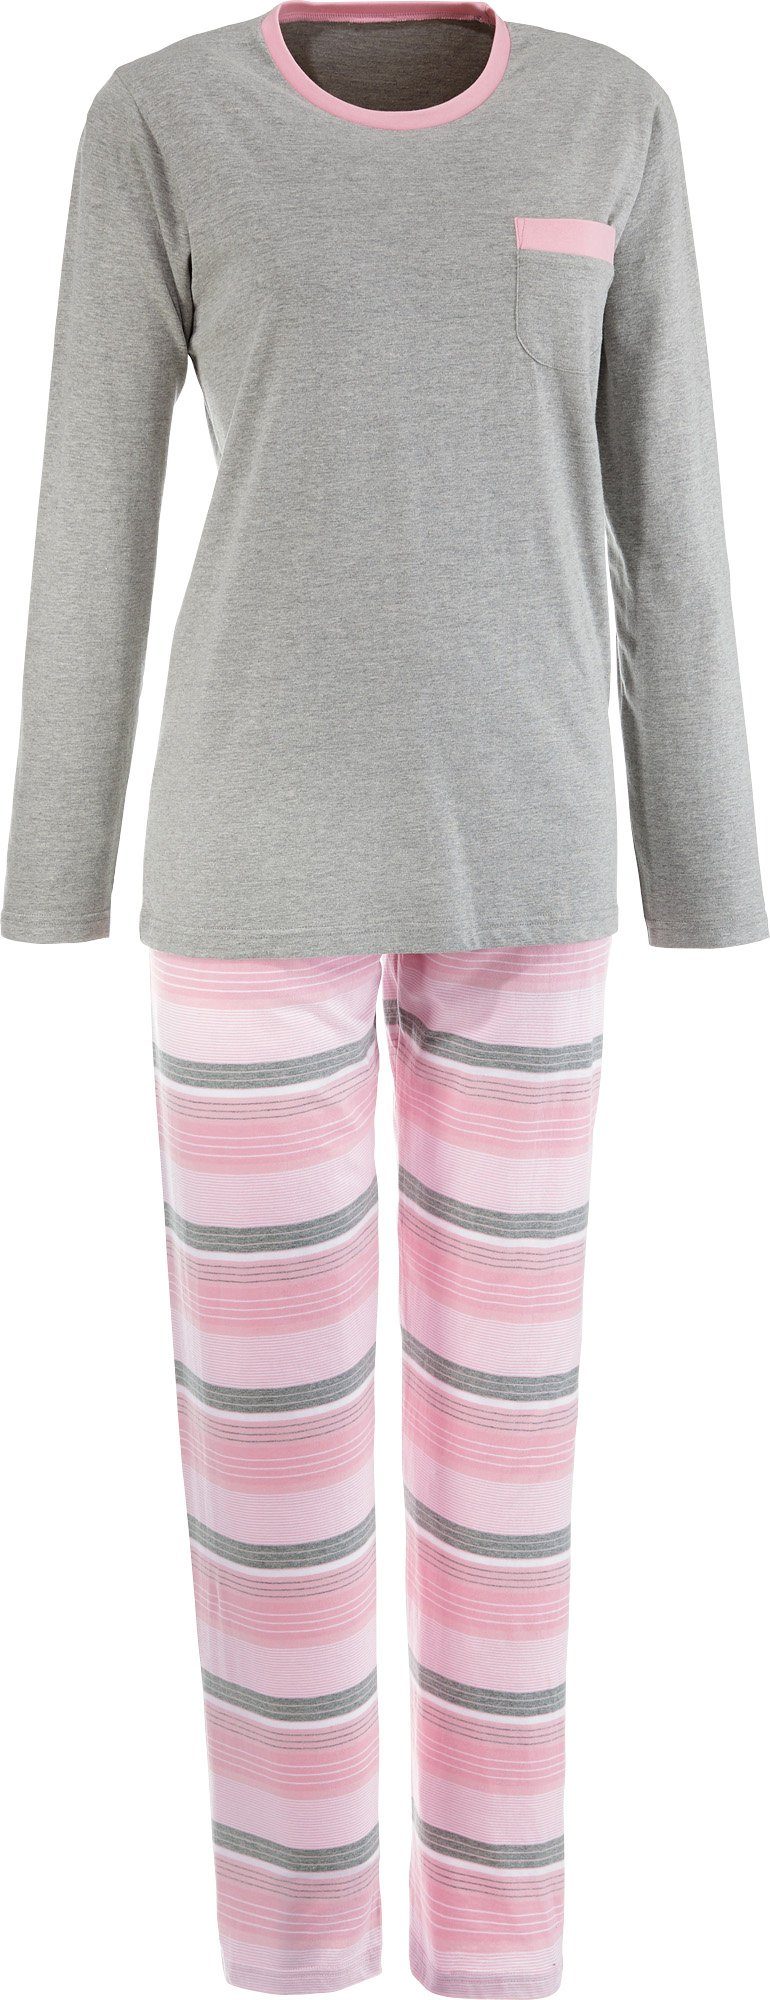 REDBEST Pyjama Damen-Schlafanzug Streifen Single-Jersey